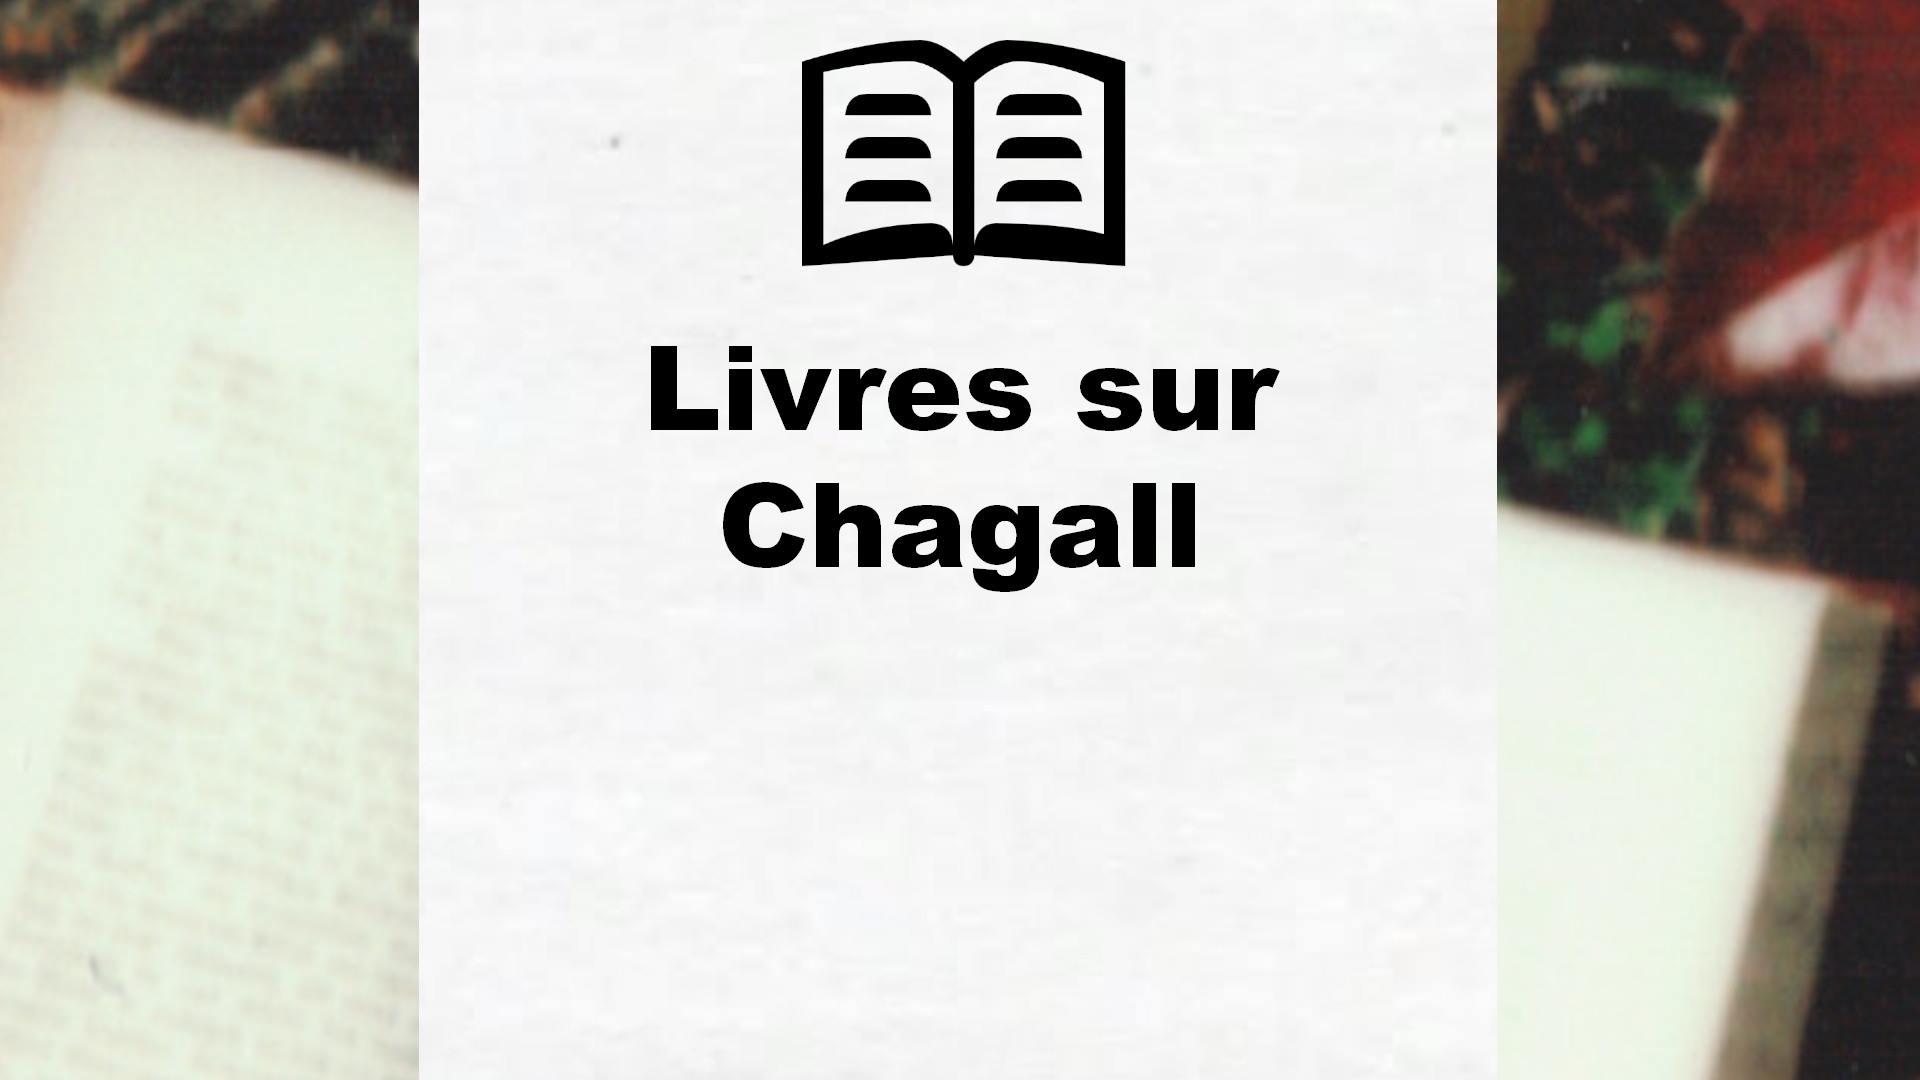 Livres sur Chagall